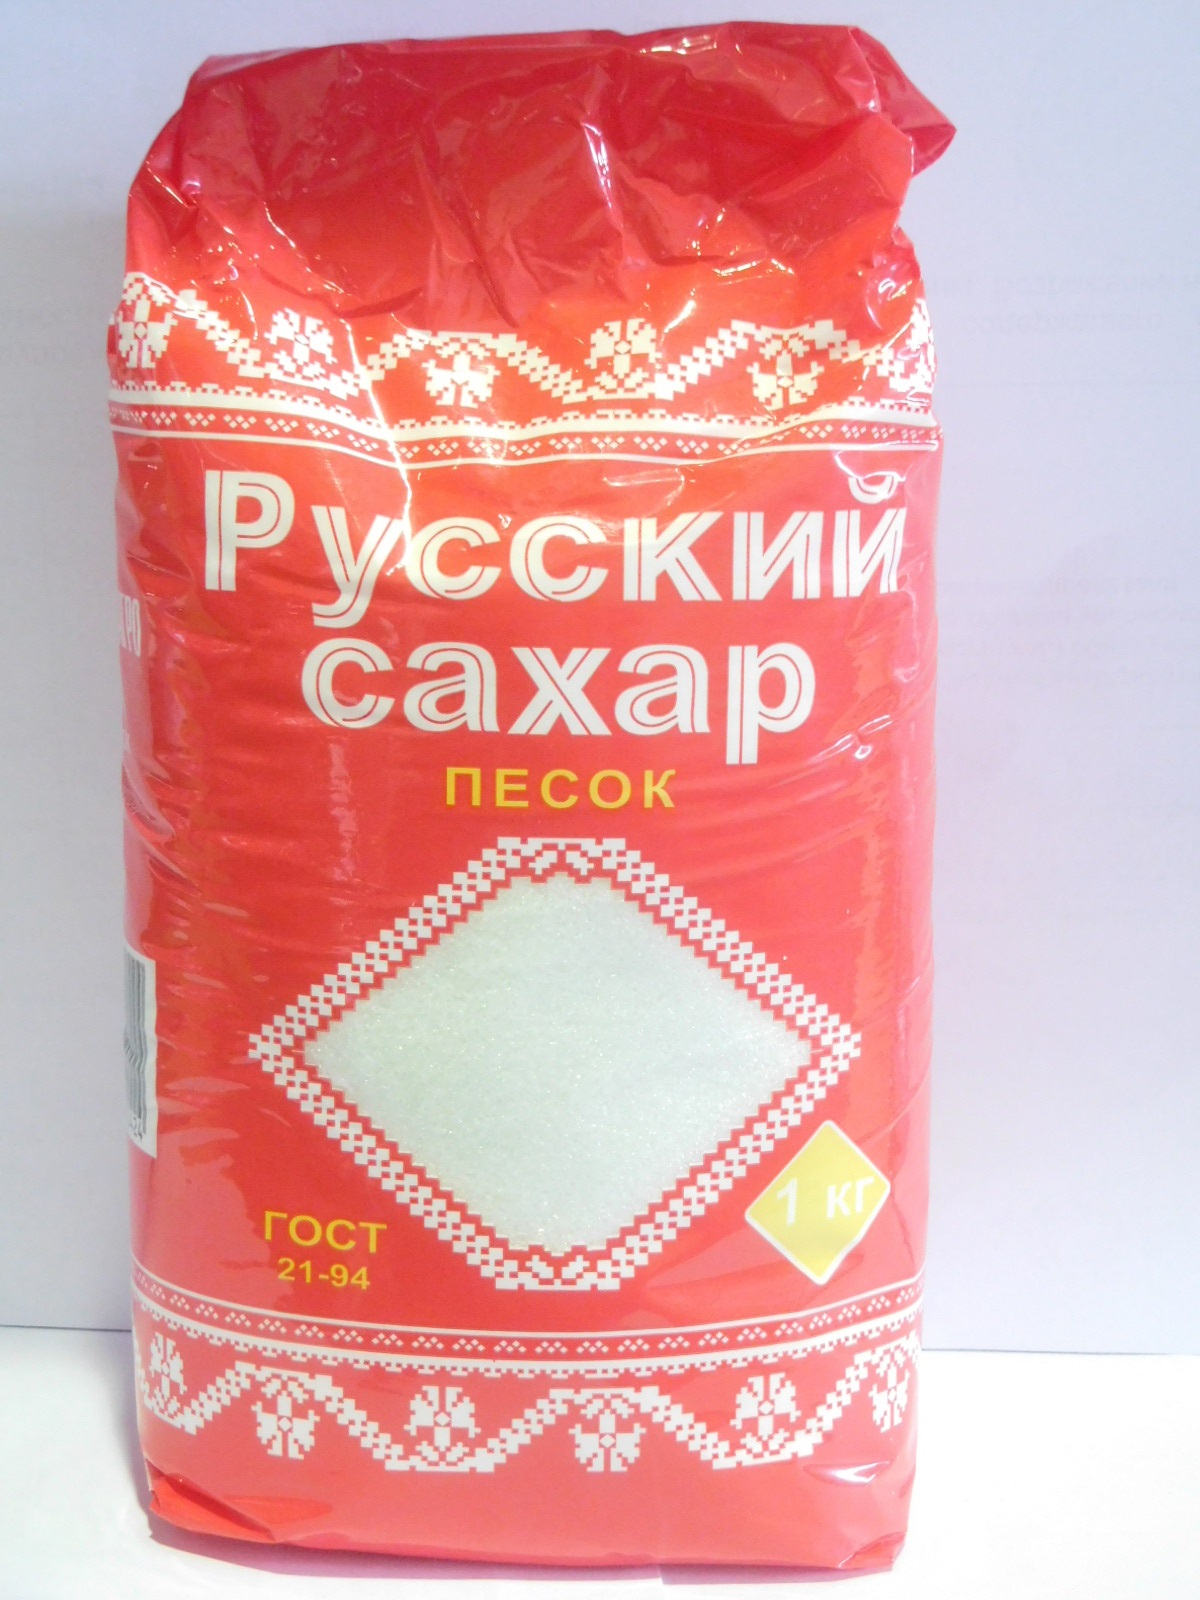 Где Купить Сахар В Омске Дешево